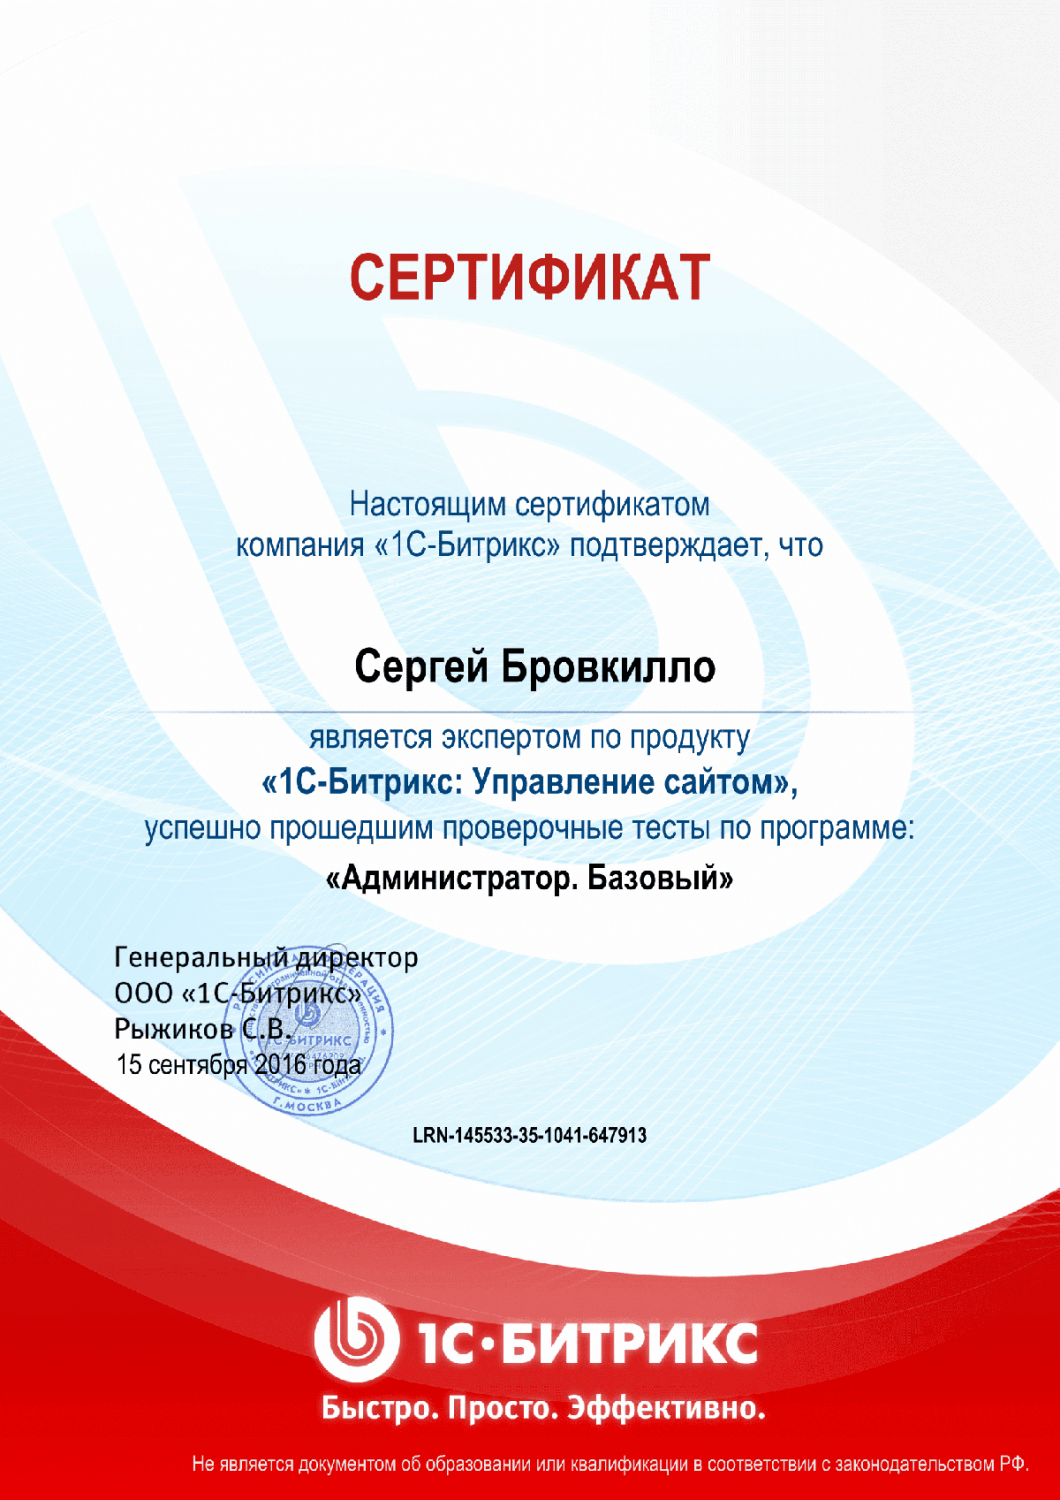 Сертификат эксперта по программе "Администратор. Базовый" в Оренбурга